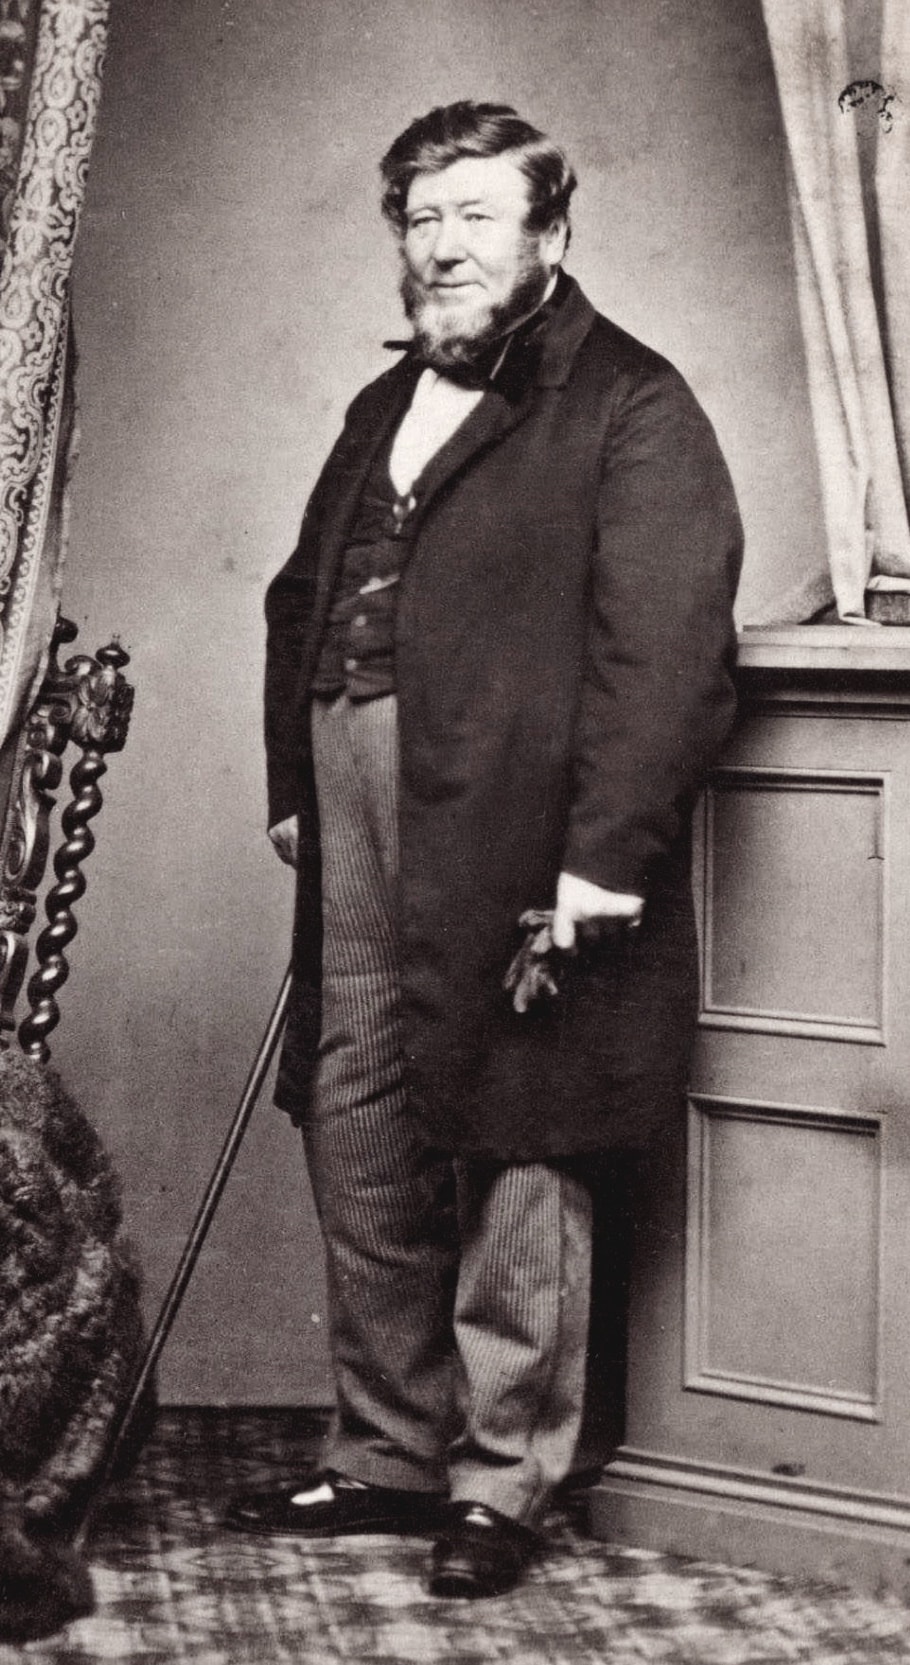 William Clarke, Melbourne, c. 1860